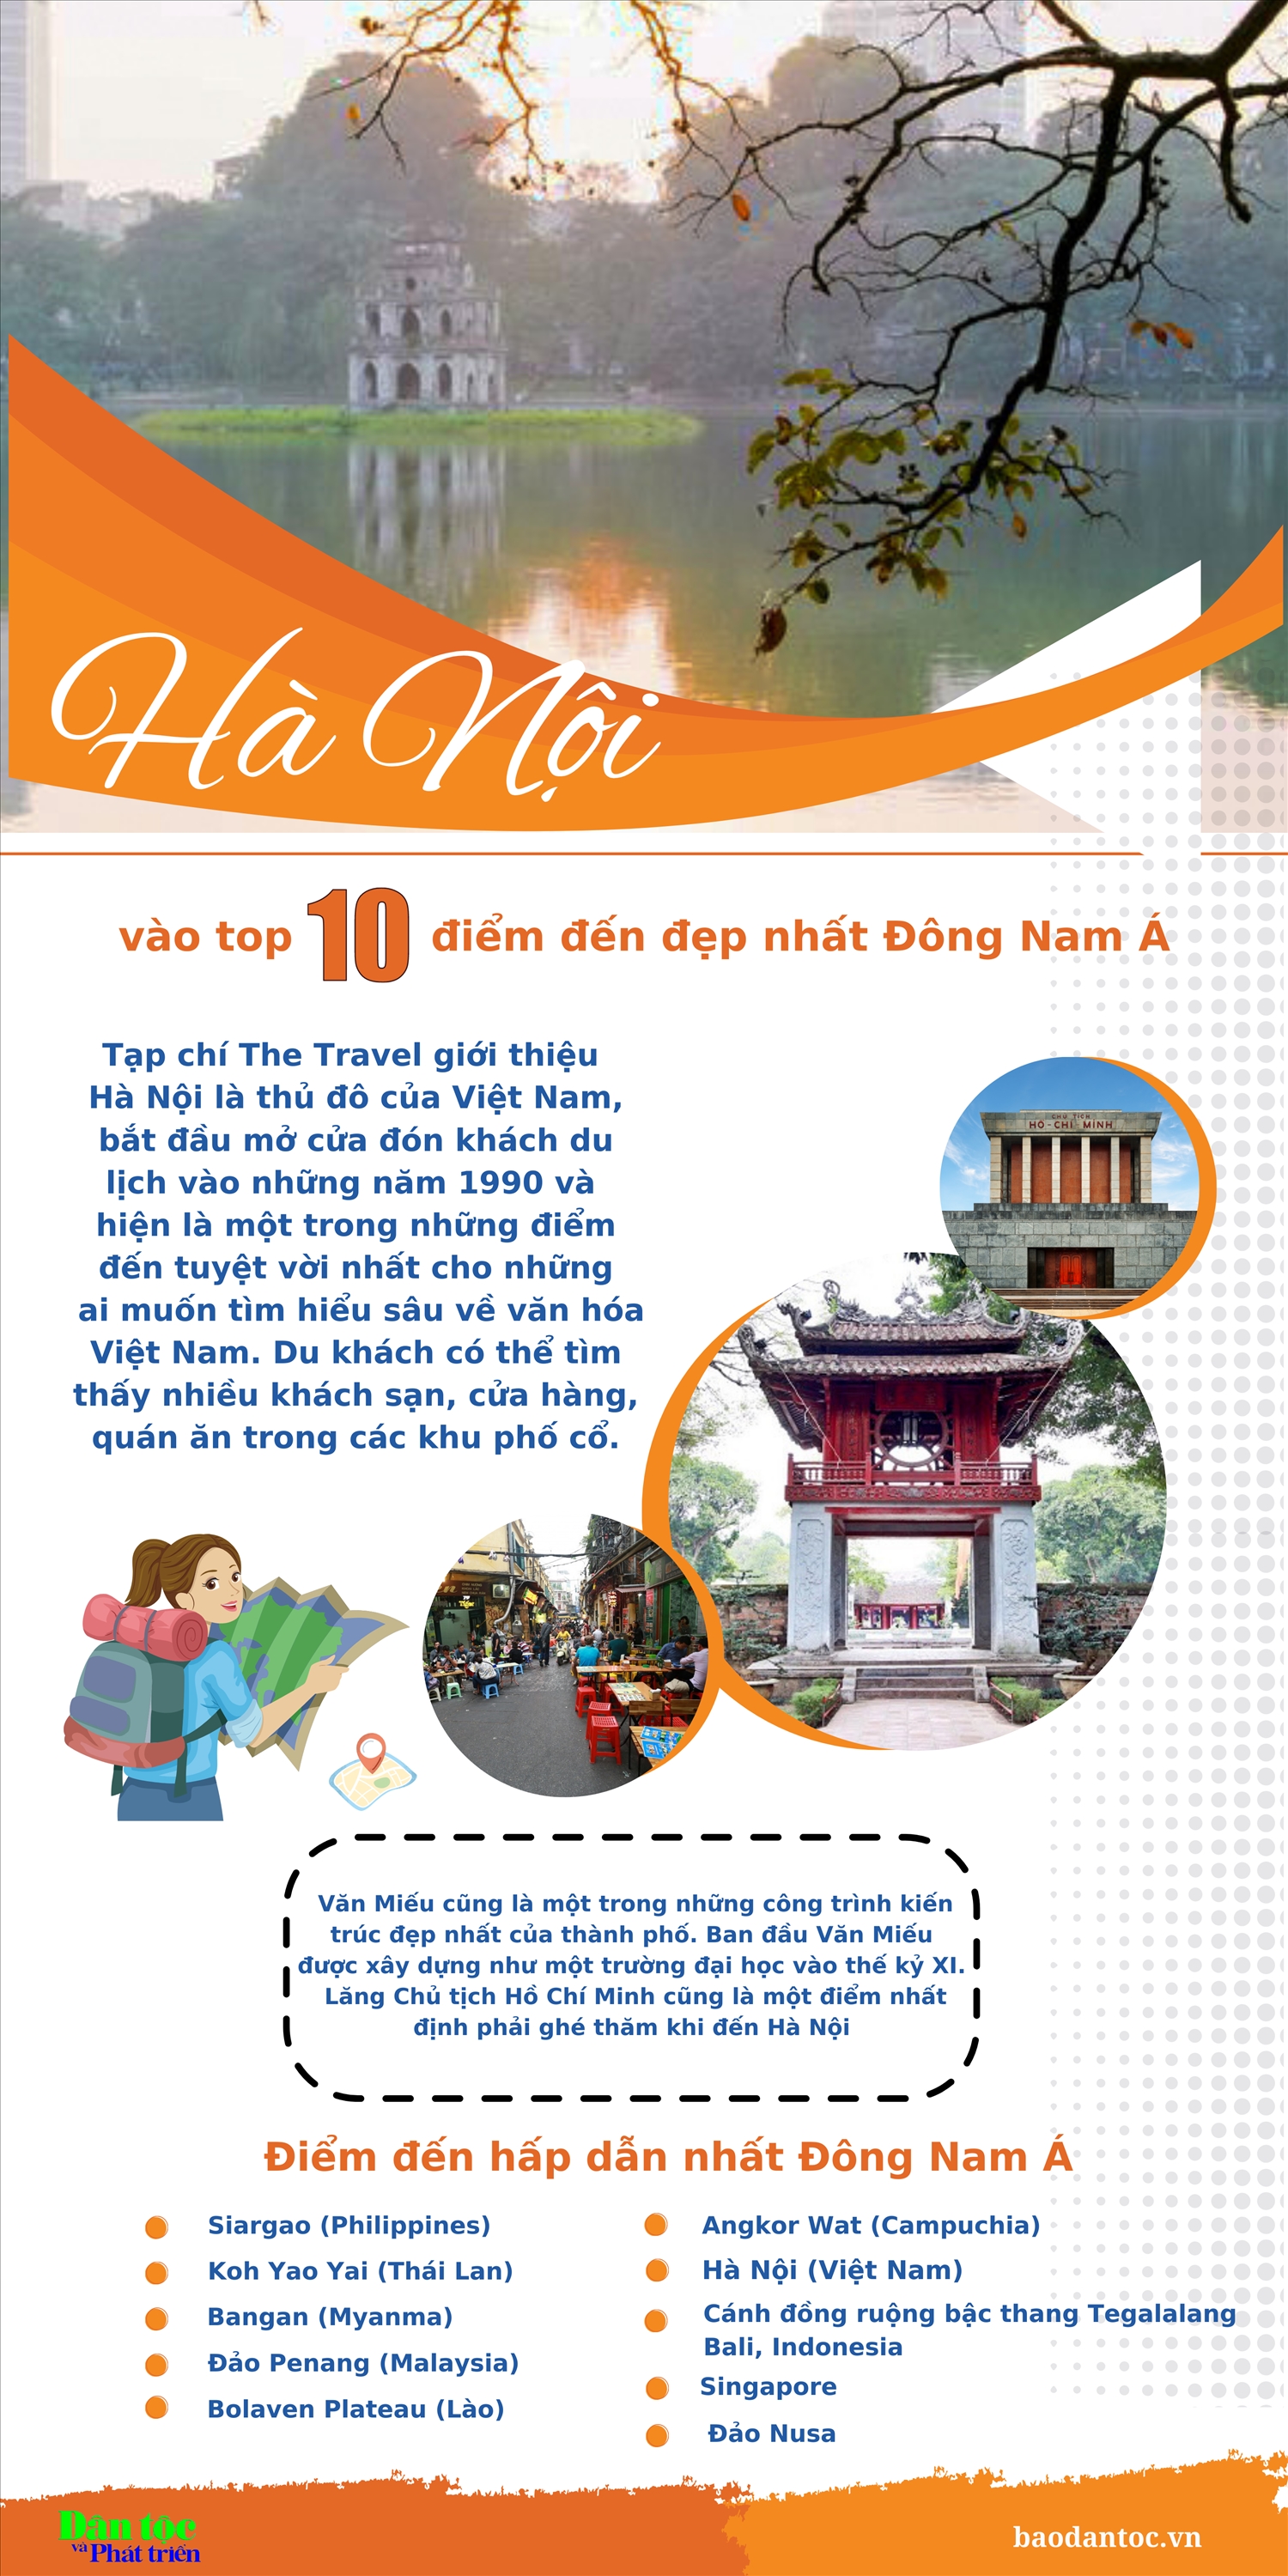 (inforgraphic) Hà Nội vào top 10 điểm đến đẹp nhất Đông Nam Á